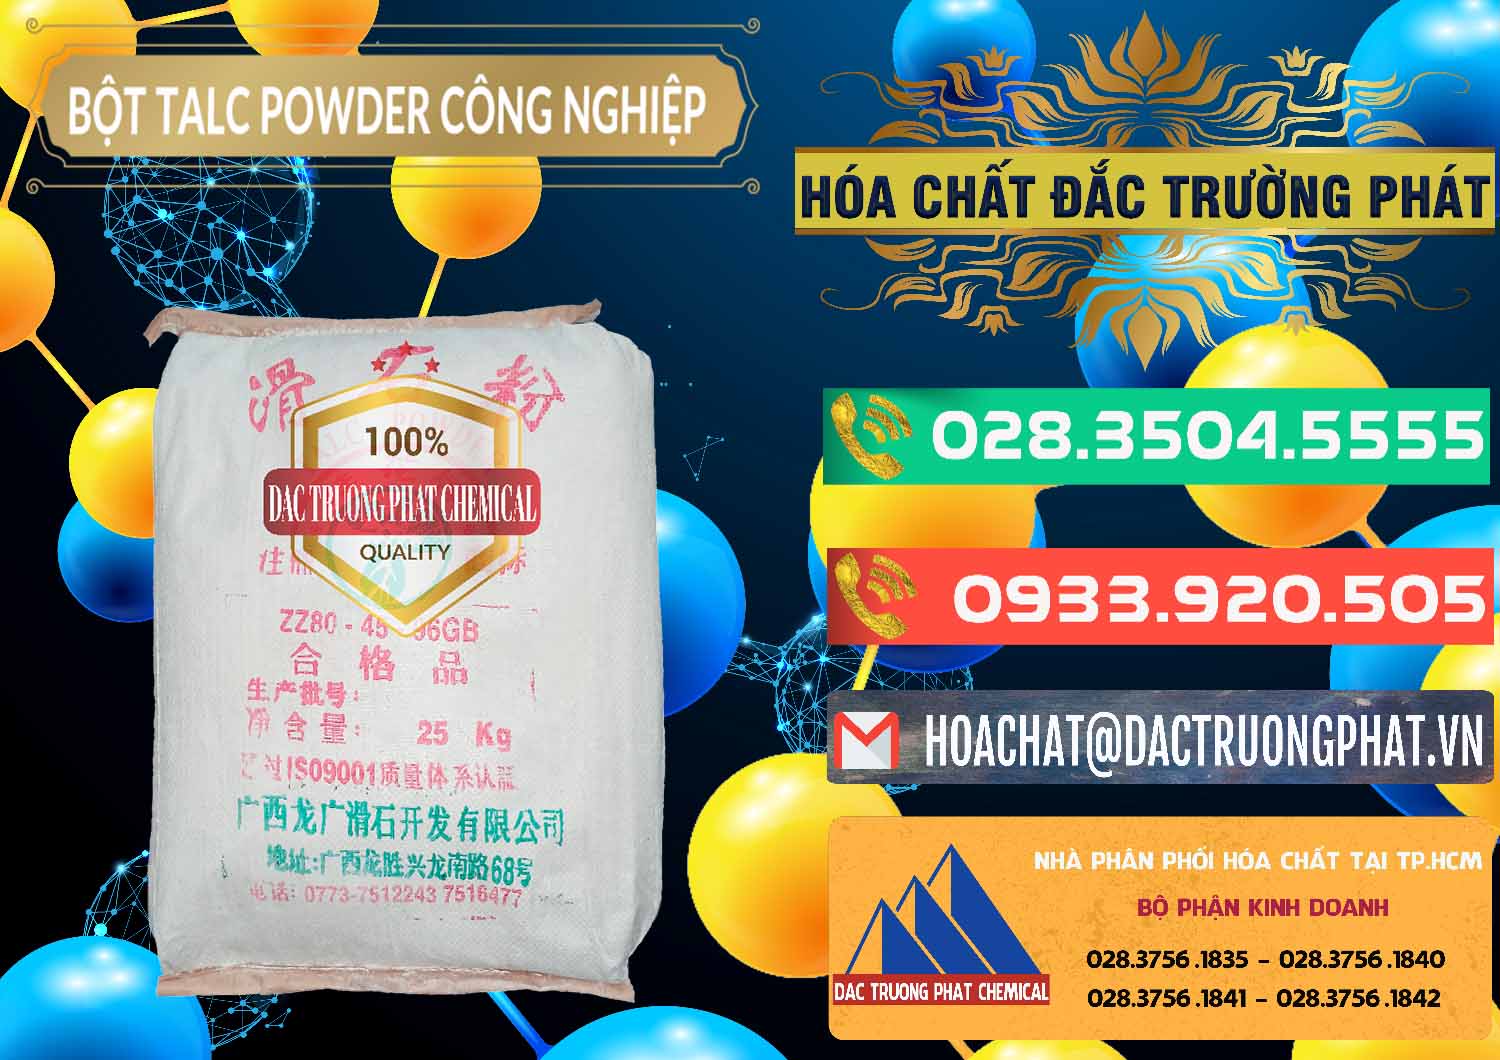 Nơi chuyên bán _ cung cấp Bột Talc Powder Công Nghiệp Trung Quốc China - 0037 - Nơi chuyên cung cấp _ bán hóa chất tại TP.HCM - congtyhoachat.com.vn